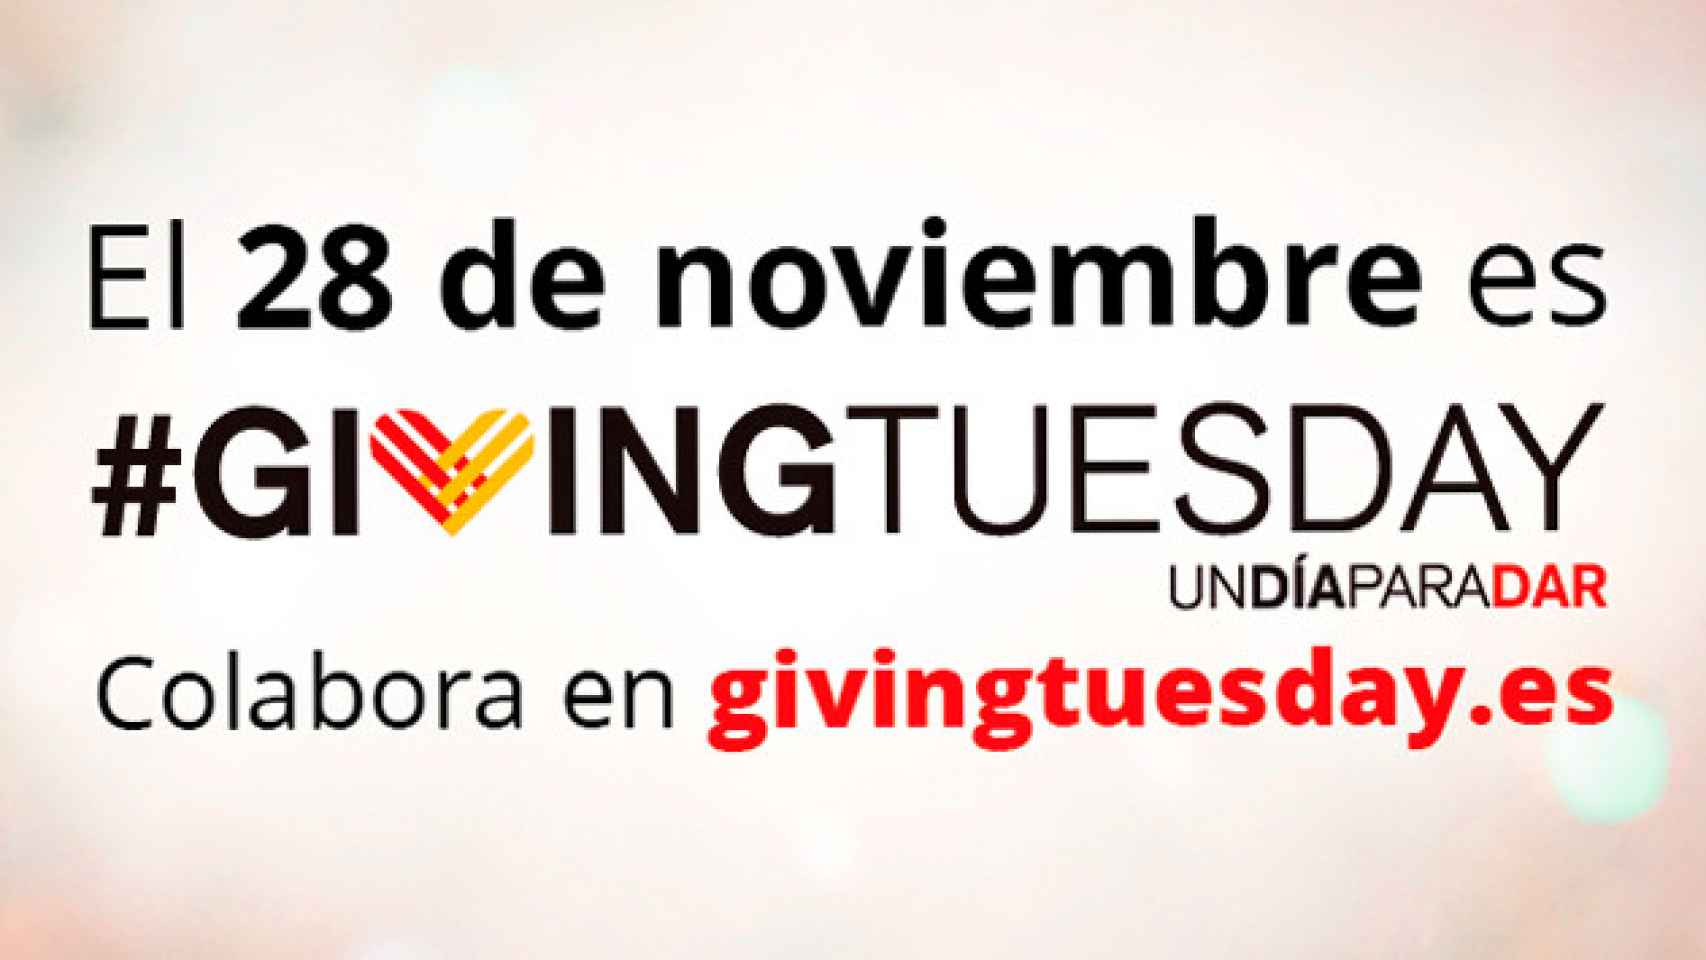 Campaña de Un día para dar o 'Giving Tuesday' España